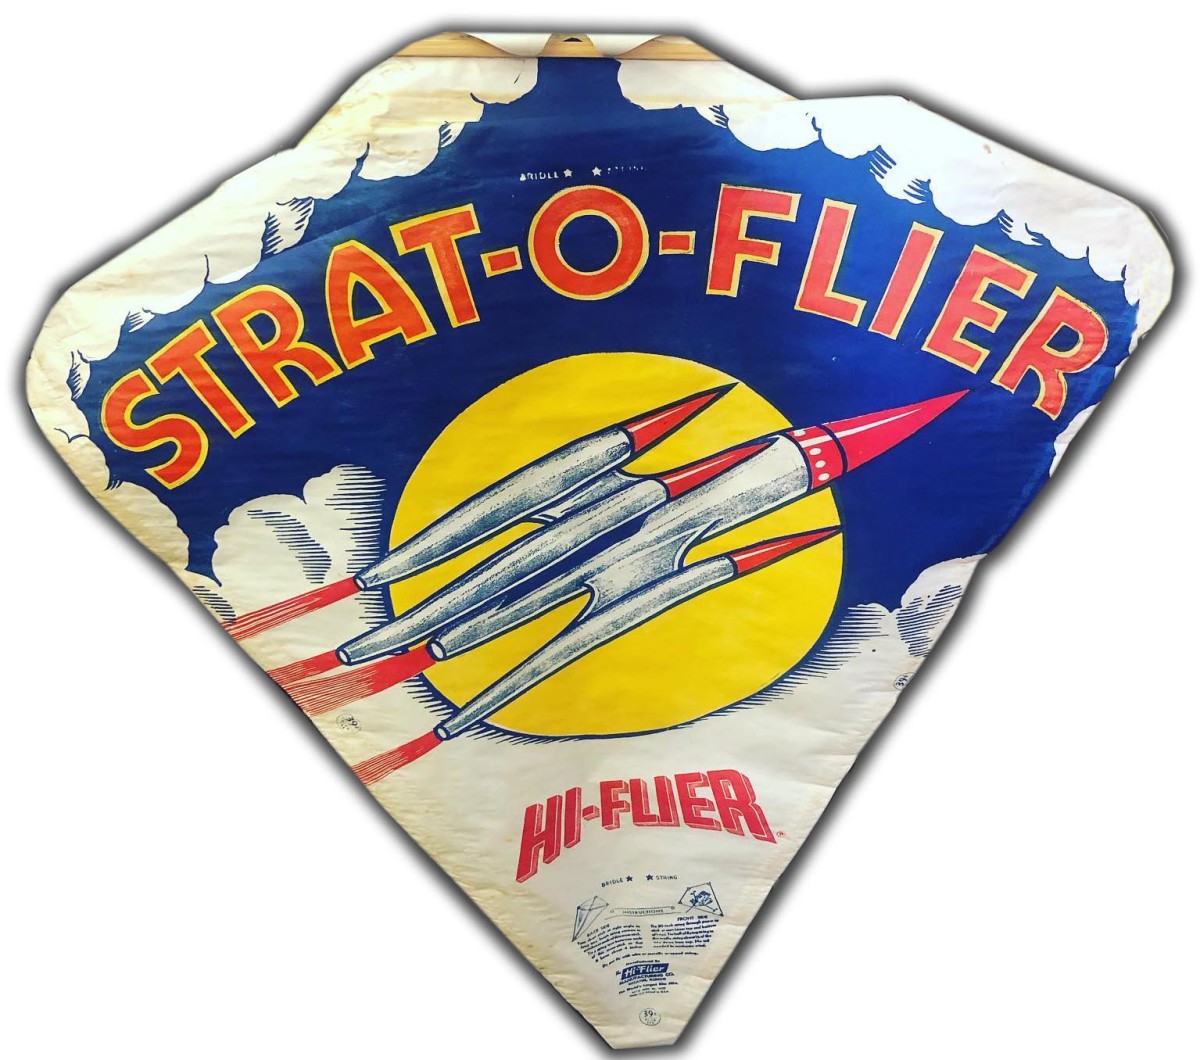 Strat-O-Flier Hi-Flier Kite